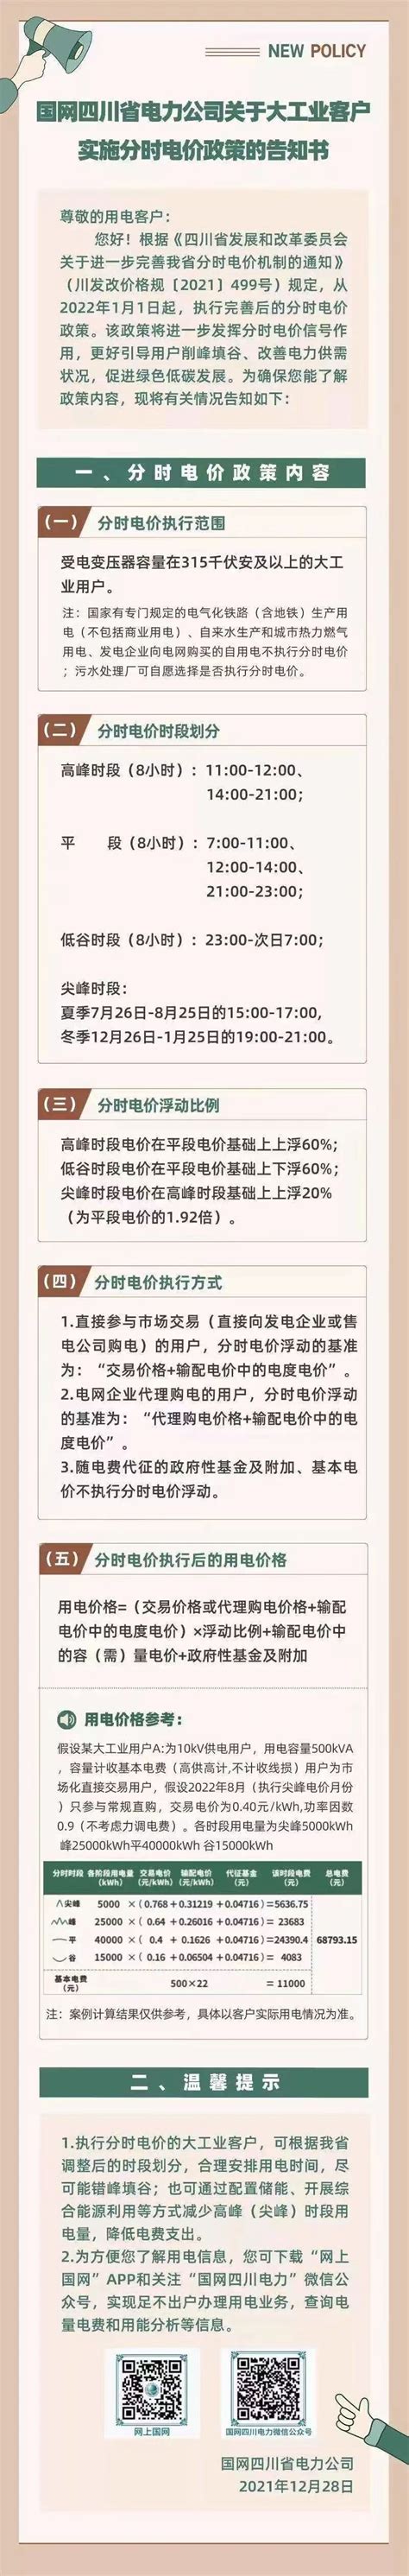 浙江省电网销售电价表2015年--岱山新闻网